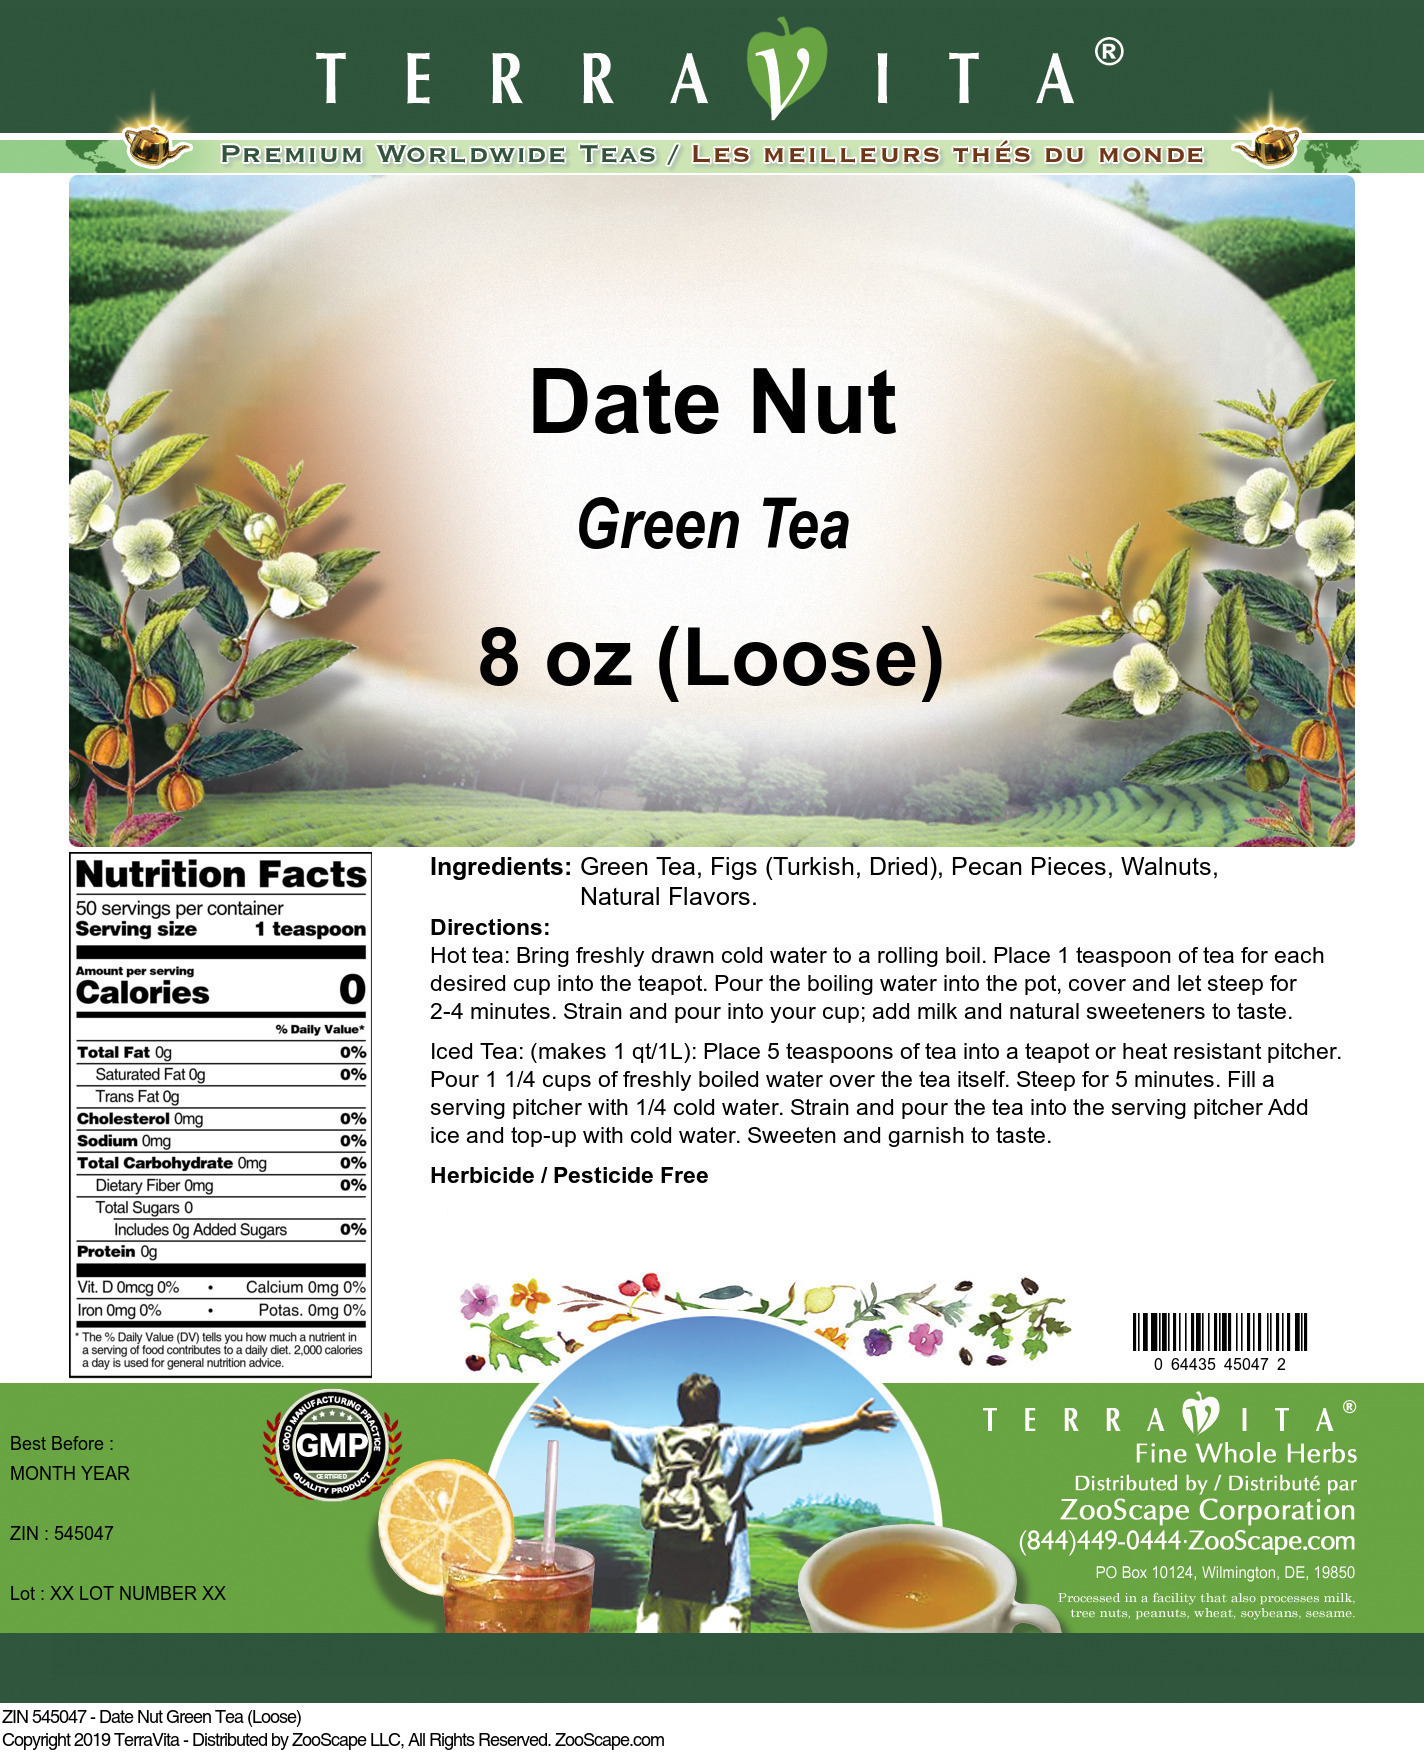 Date Nut Green Tea (Loose) - Label